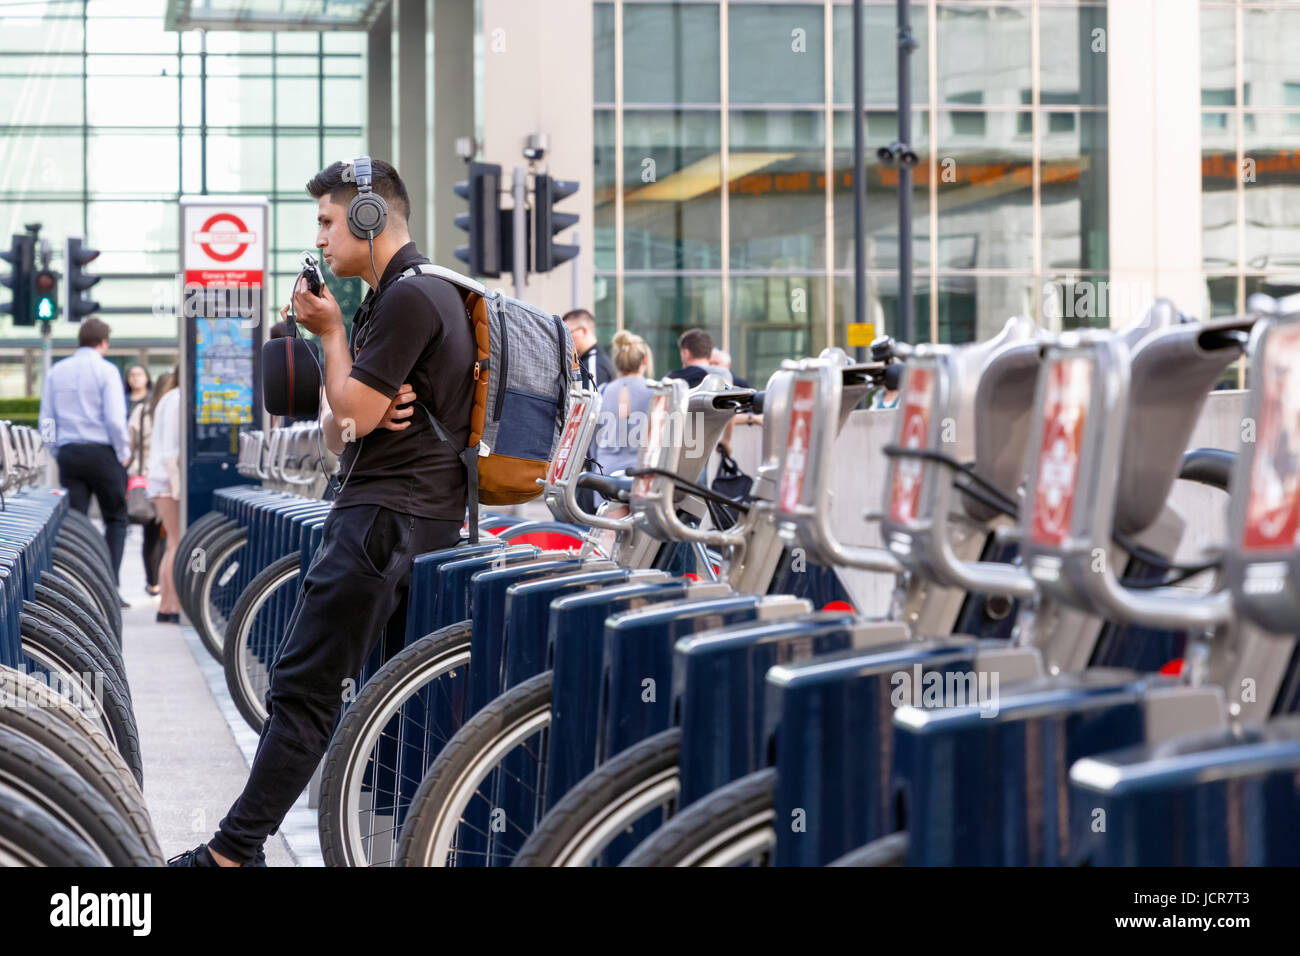 Londres, Royaume-Uni - 10 mai 2017 - Un jeune homme s'appuyant sur un vélo à Santander une station d'accueil à Canary Wharf Banque D'Images